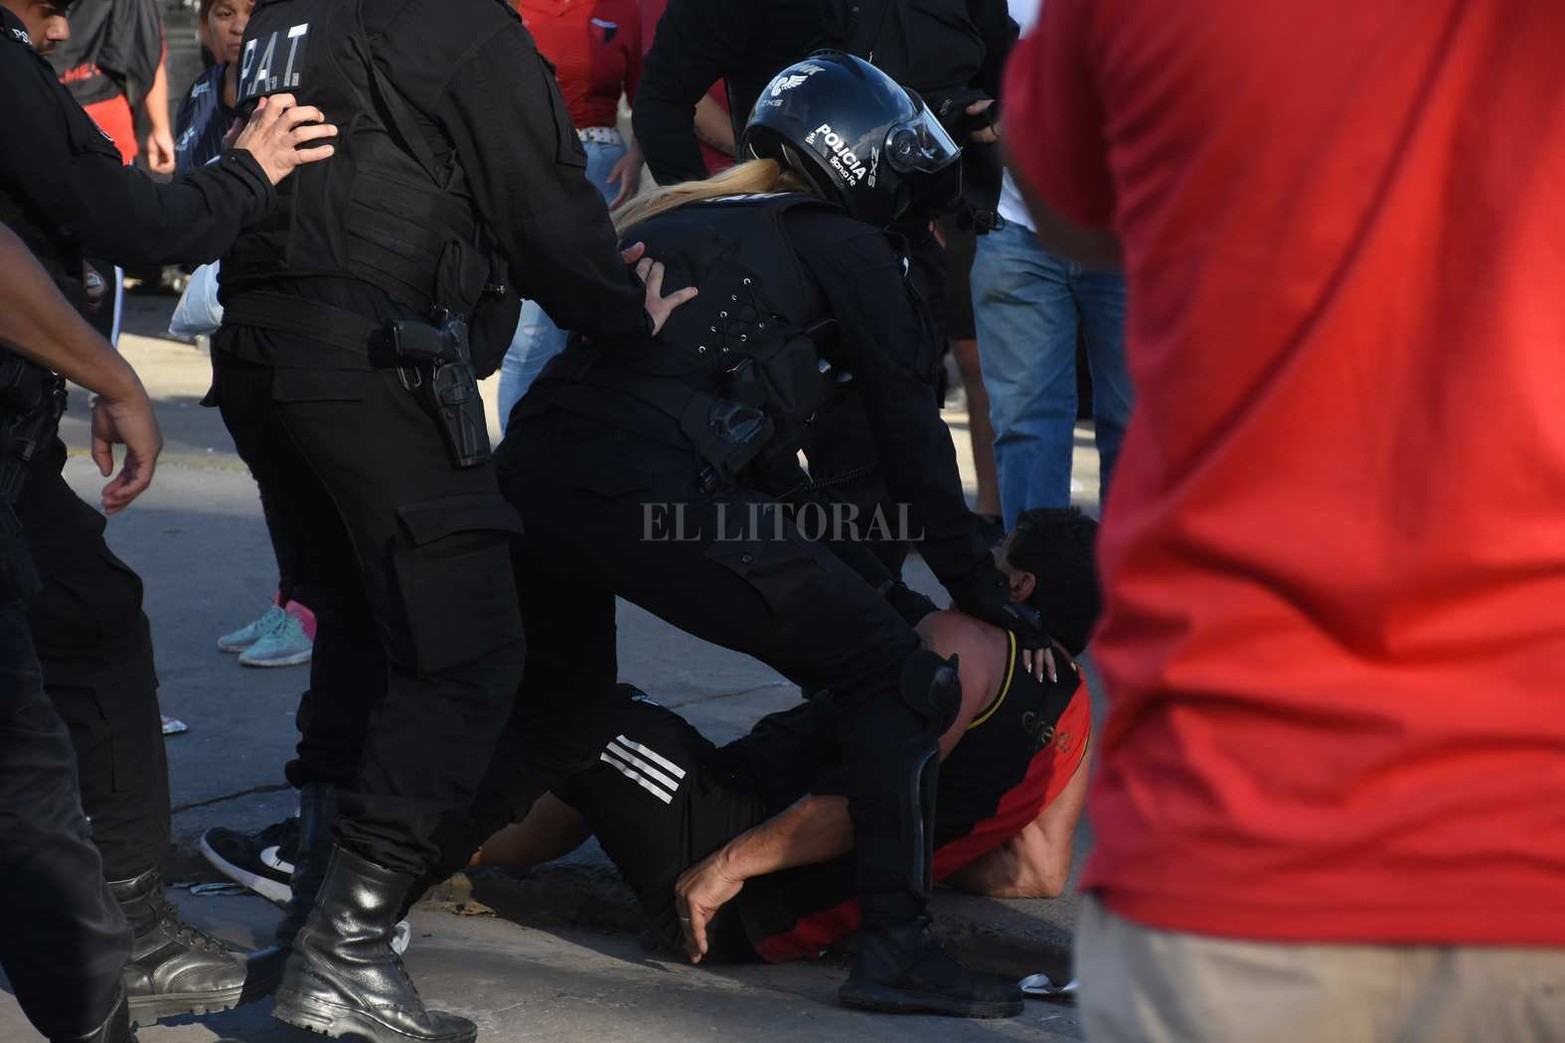 Disturbios durante el ingreso al estadio Brigadier López. El ingreso se vio demorado por una nuevo desacuerdo entre Utedyc y la dirigencia del club.